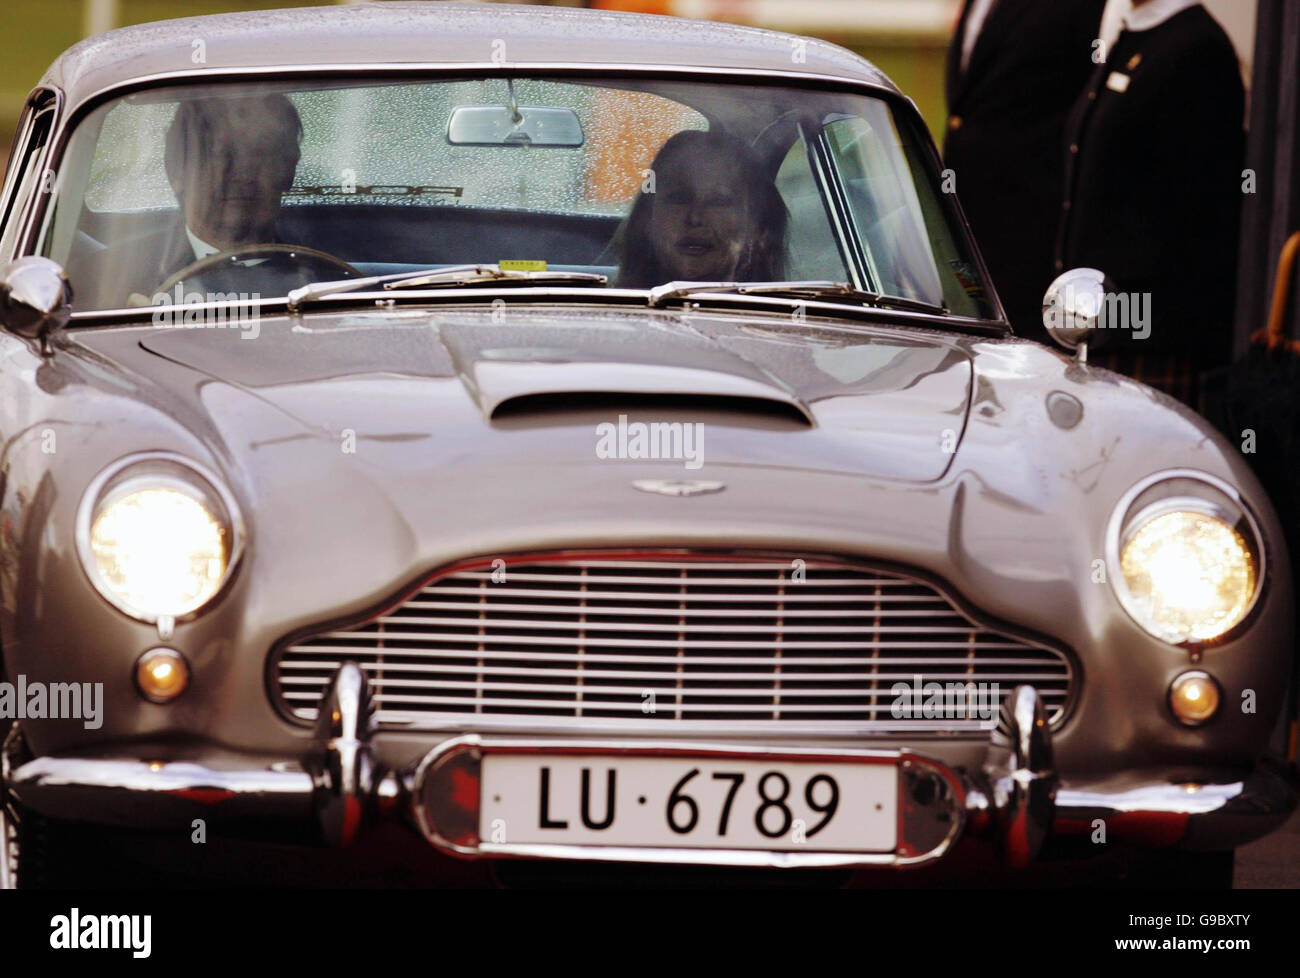 Ursula Andress llega en el original Bond Aston Martin DB5 de 'Goldfinger' en el Royal Yacht Britannia en Edimburgo para celebrar su cumpleaños. ocasión también Marca el opnening del Consulado